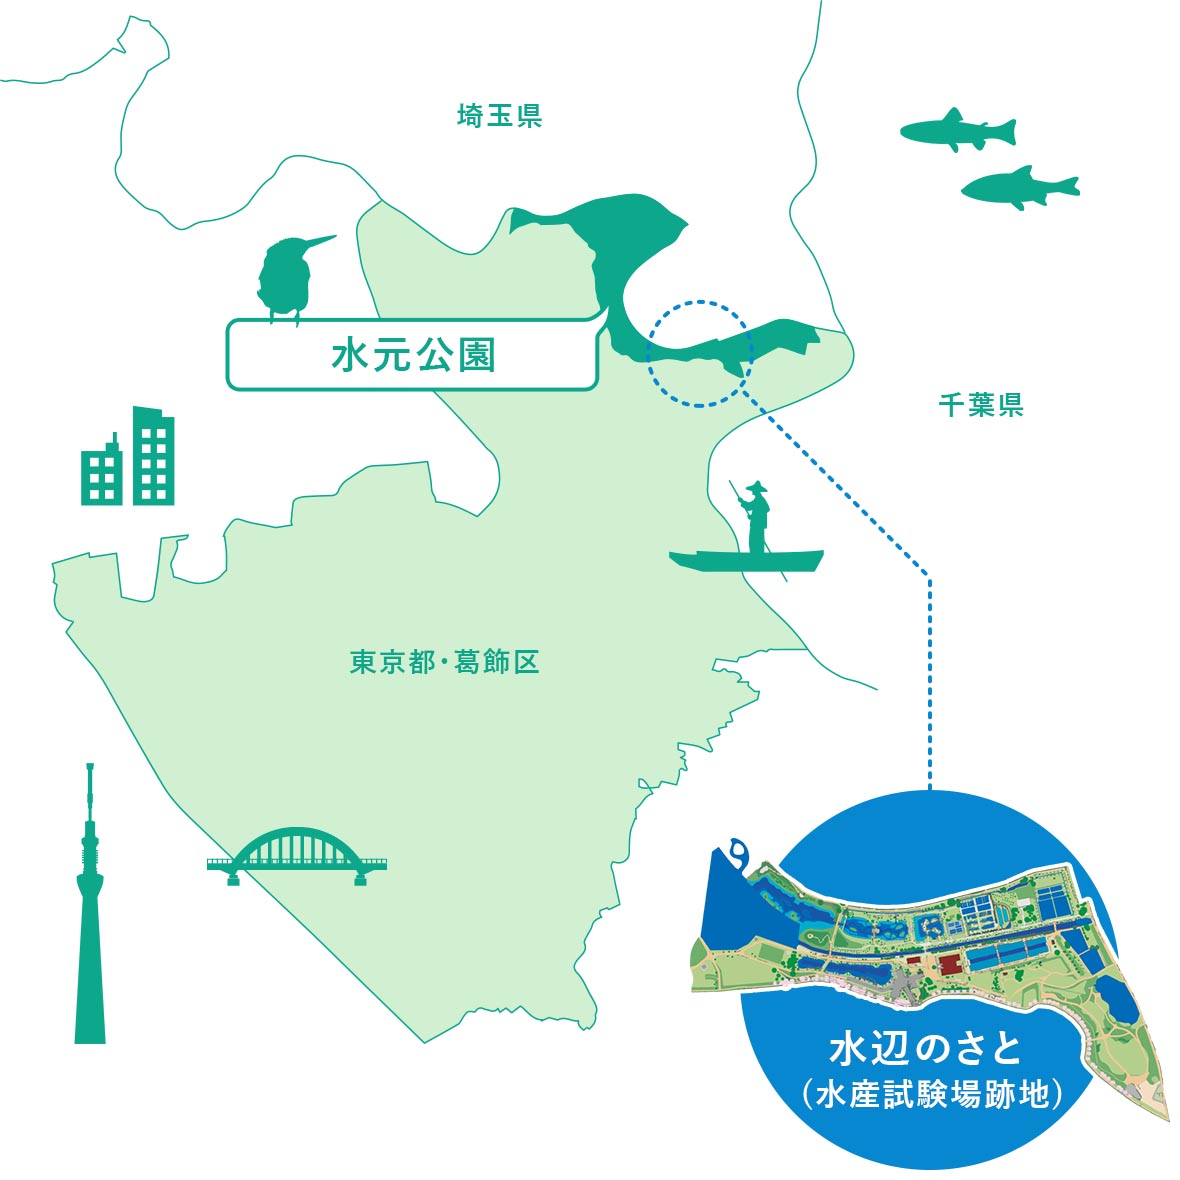 水元公園は東京都葛飾区の北東部に位置し、埼玉県の境に接しています。